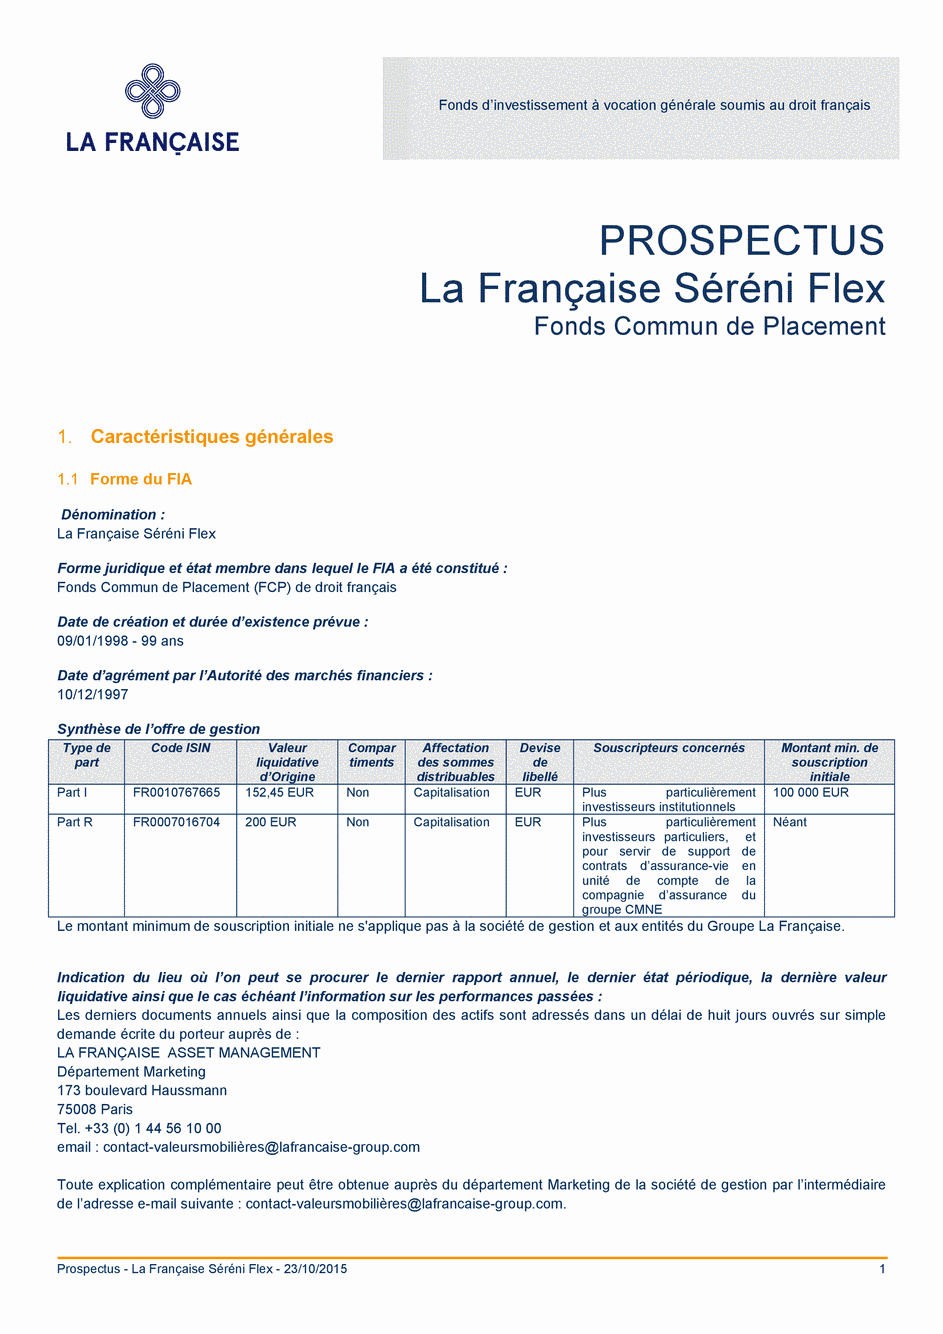 Prospectus La Française Séréni Flex - Part R - 23/10/2015 - Français